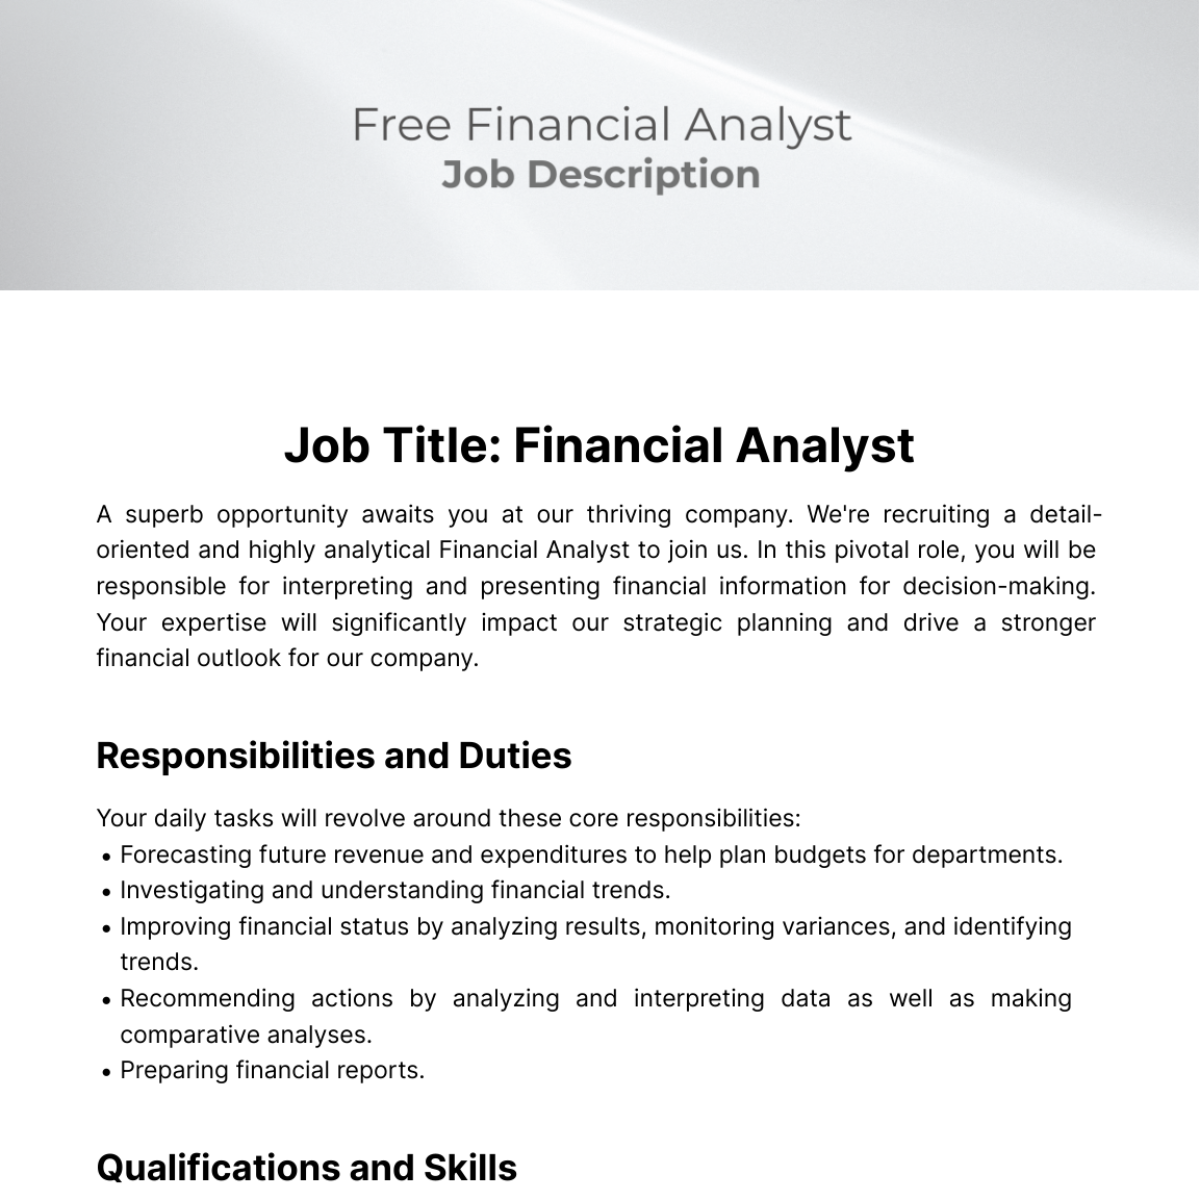 Financial Analyst Job Description Template